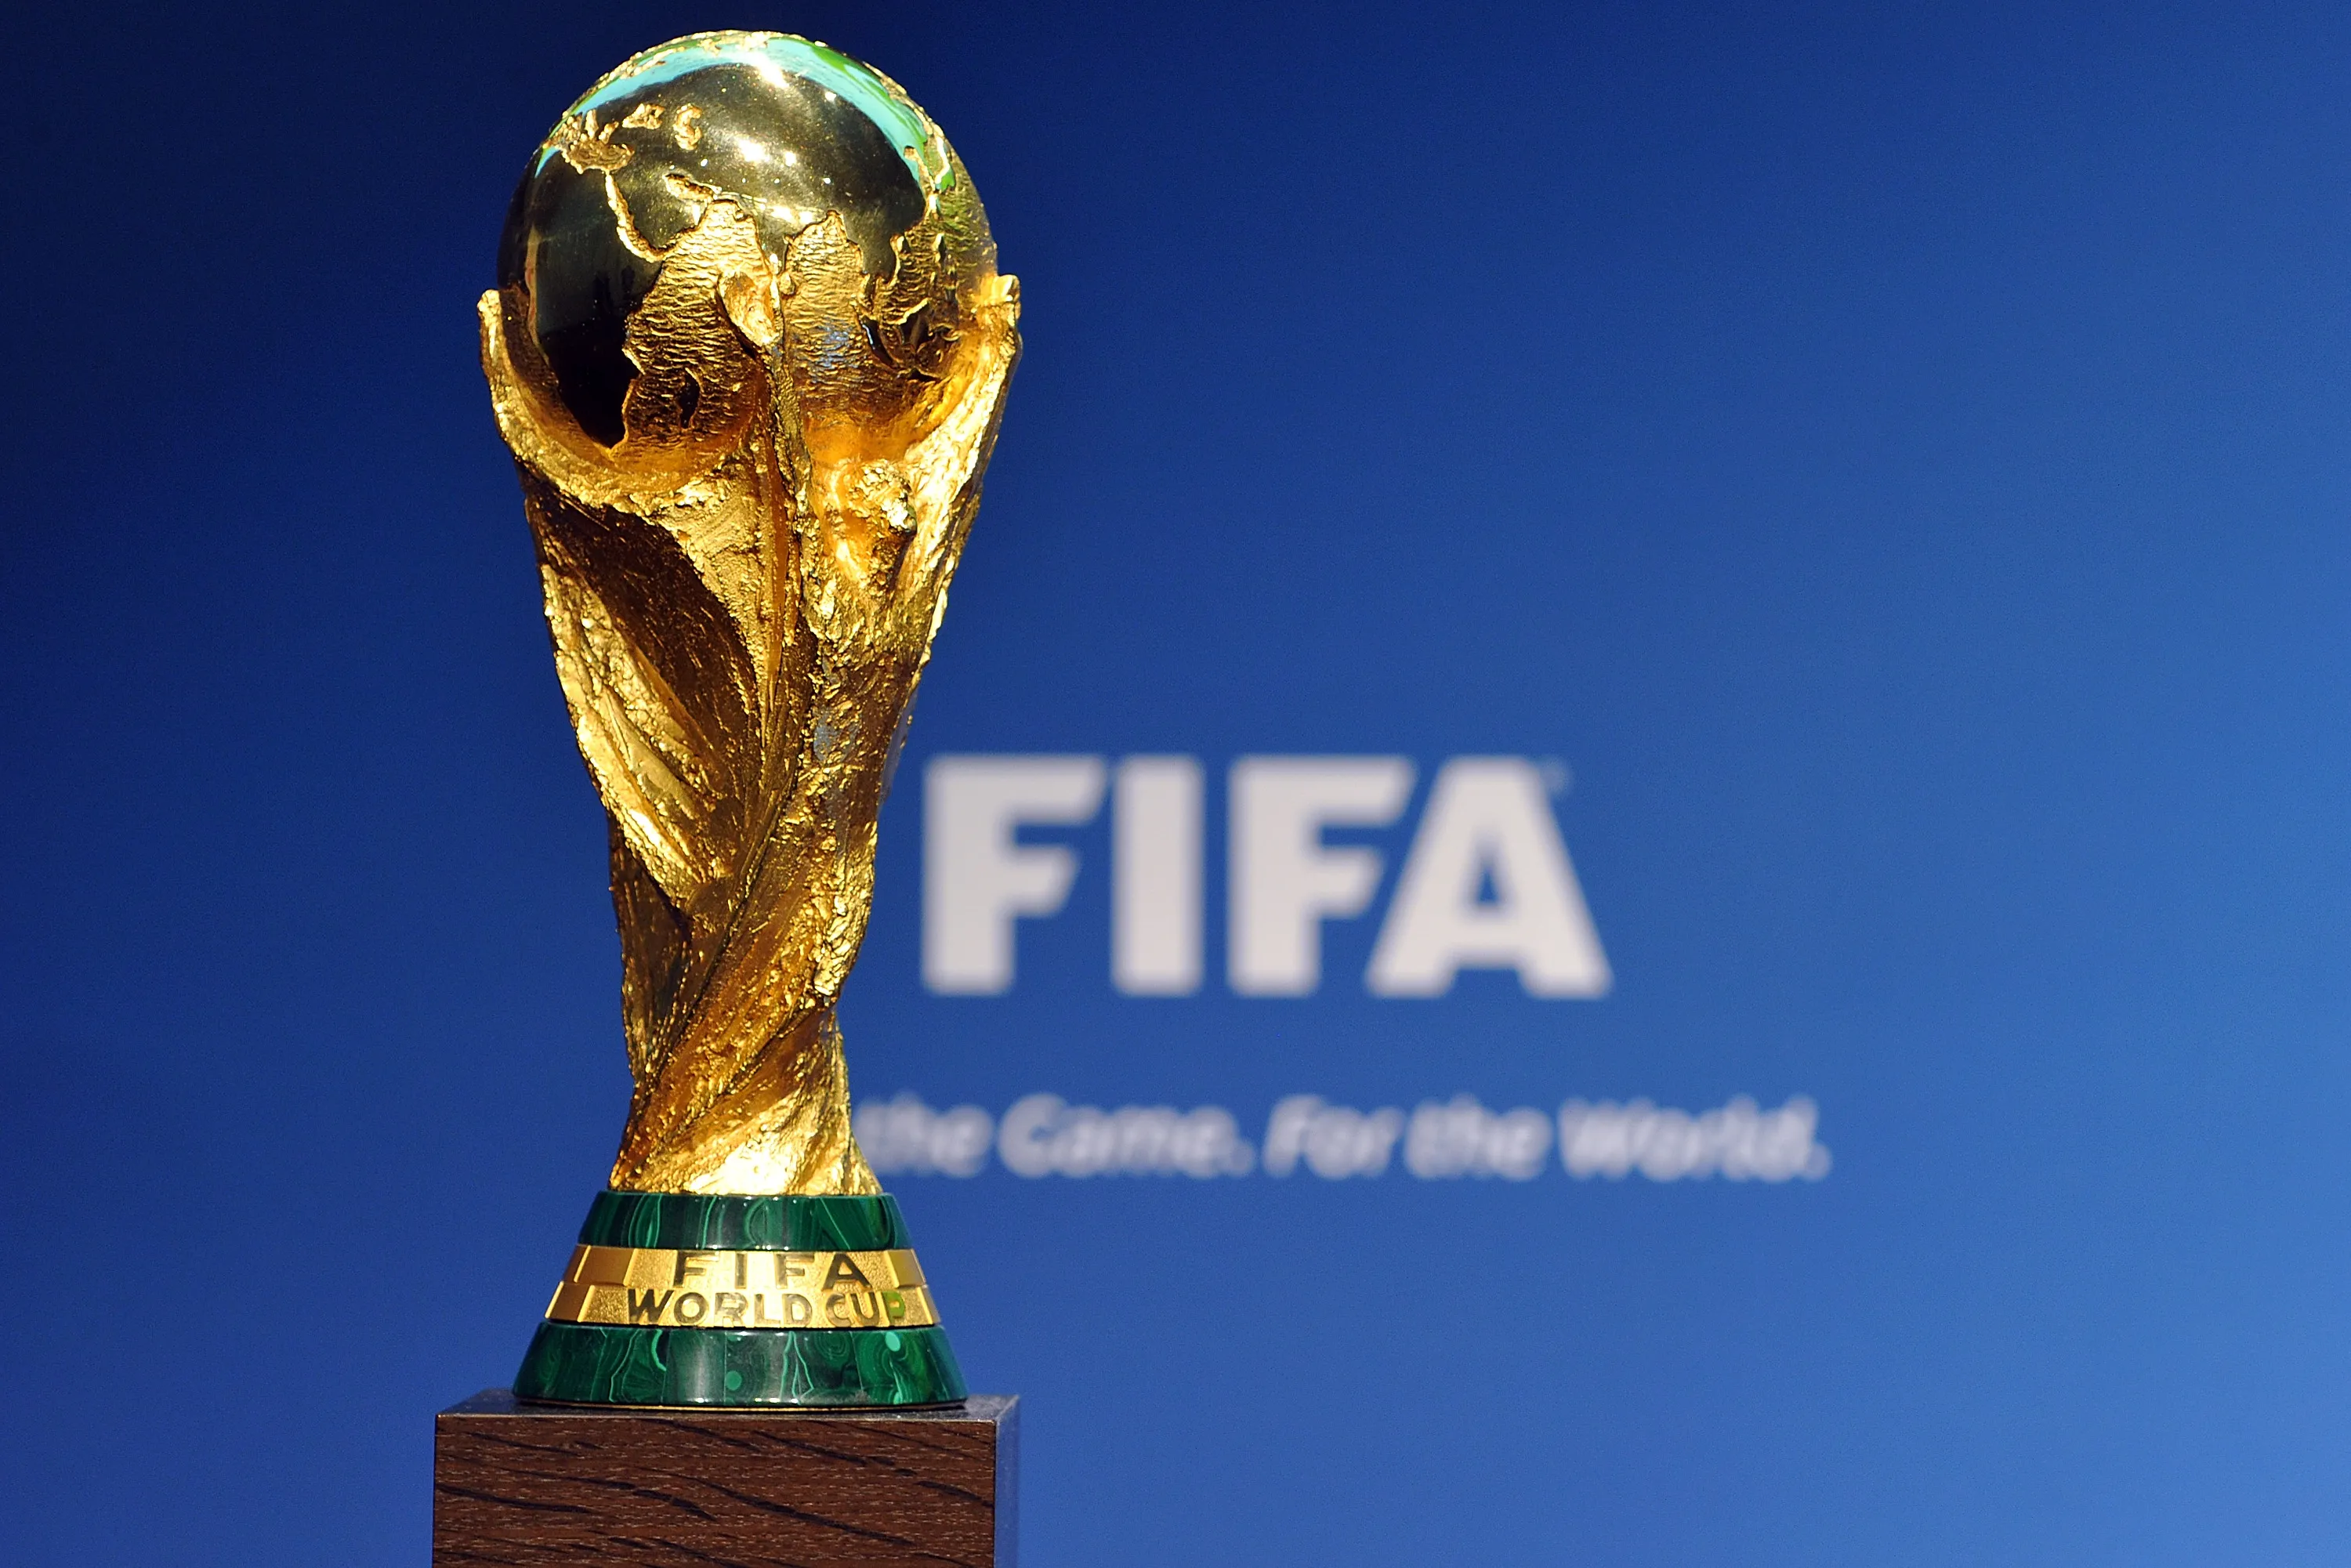 Palmarés del Mundial de Fútbol: Cuántas Copas ha ganado cada selección y quién tiene más hasta Qatar 2022